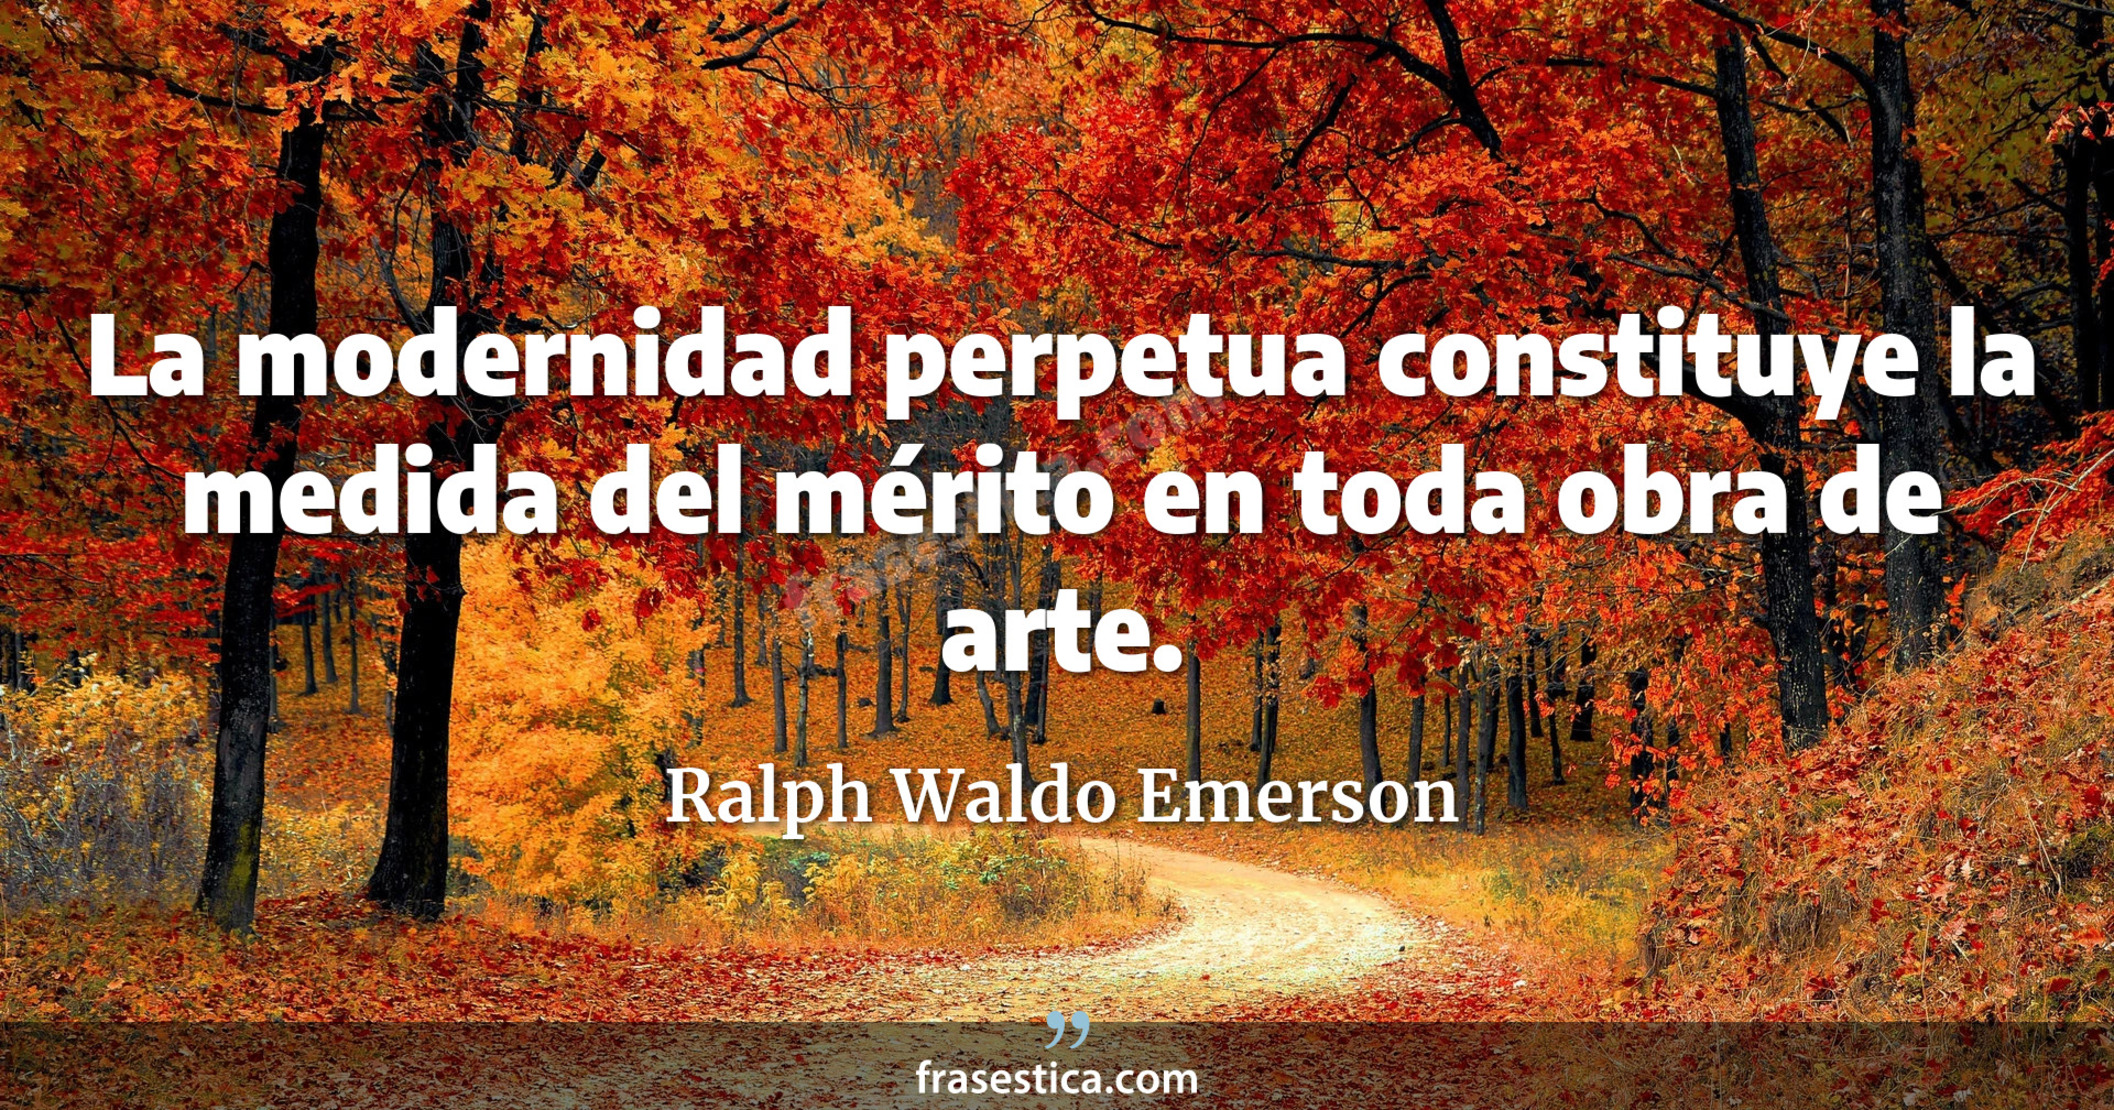 La modernidad perpetua constituye la medida del mérito en toda obra de arte. - Ralph Waldo Emerson